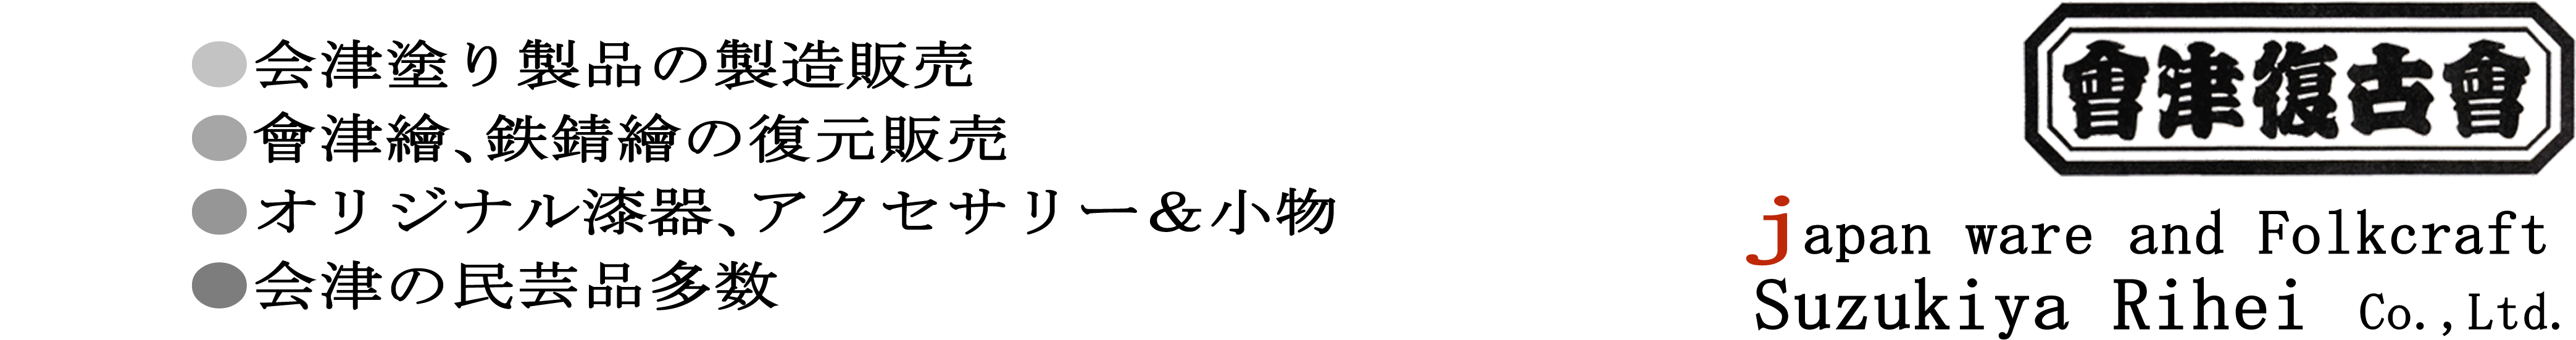 会津塗り｜会津絵｜鉄錆絵｜オリジナル漆器の製造販売